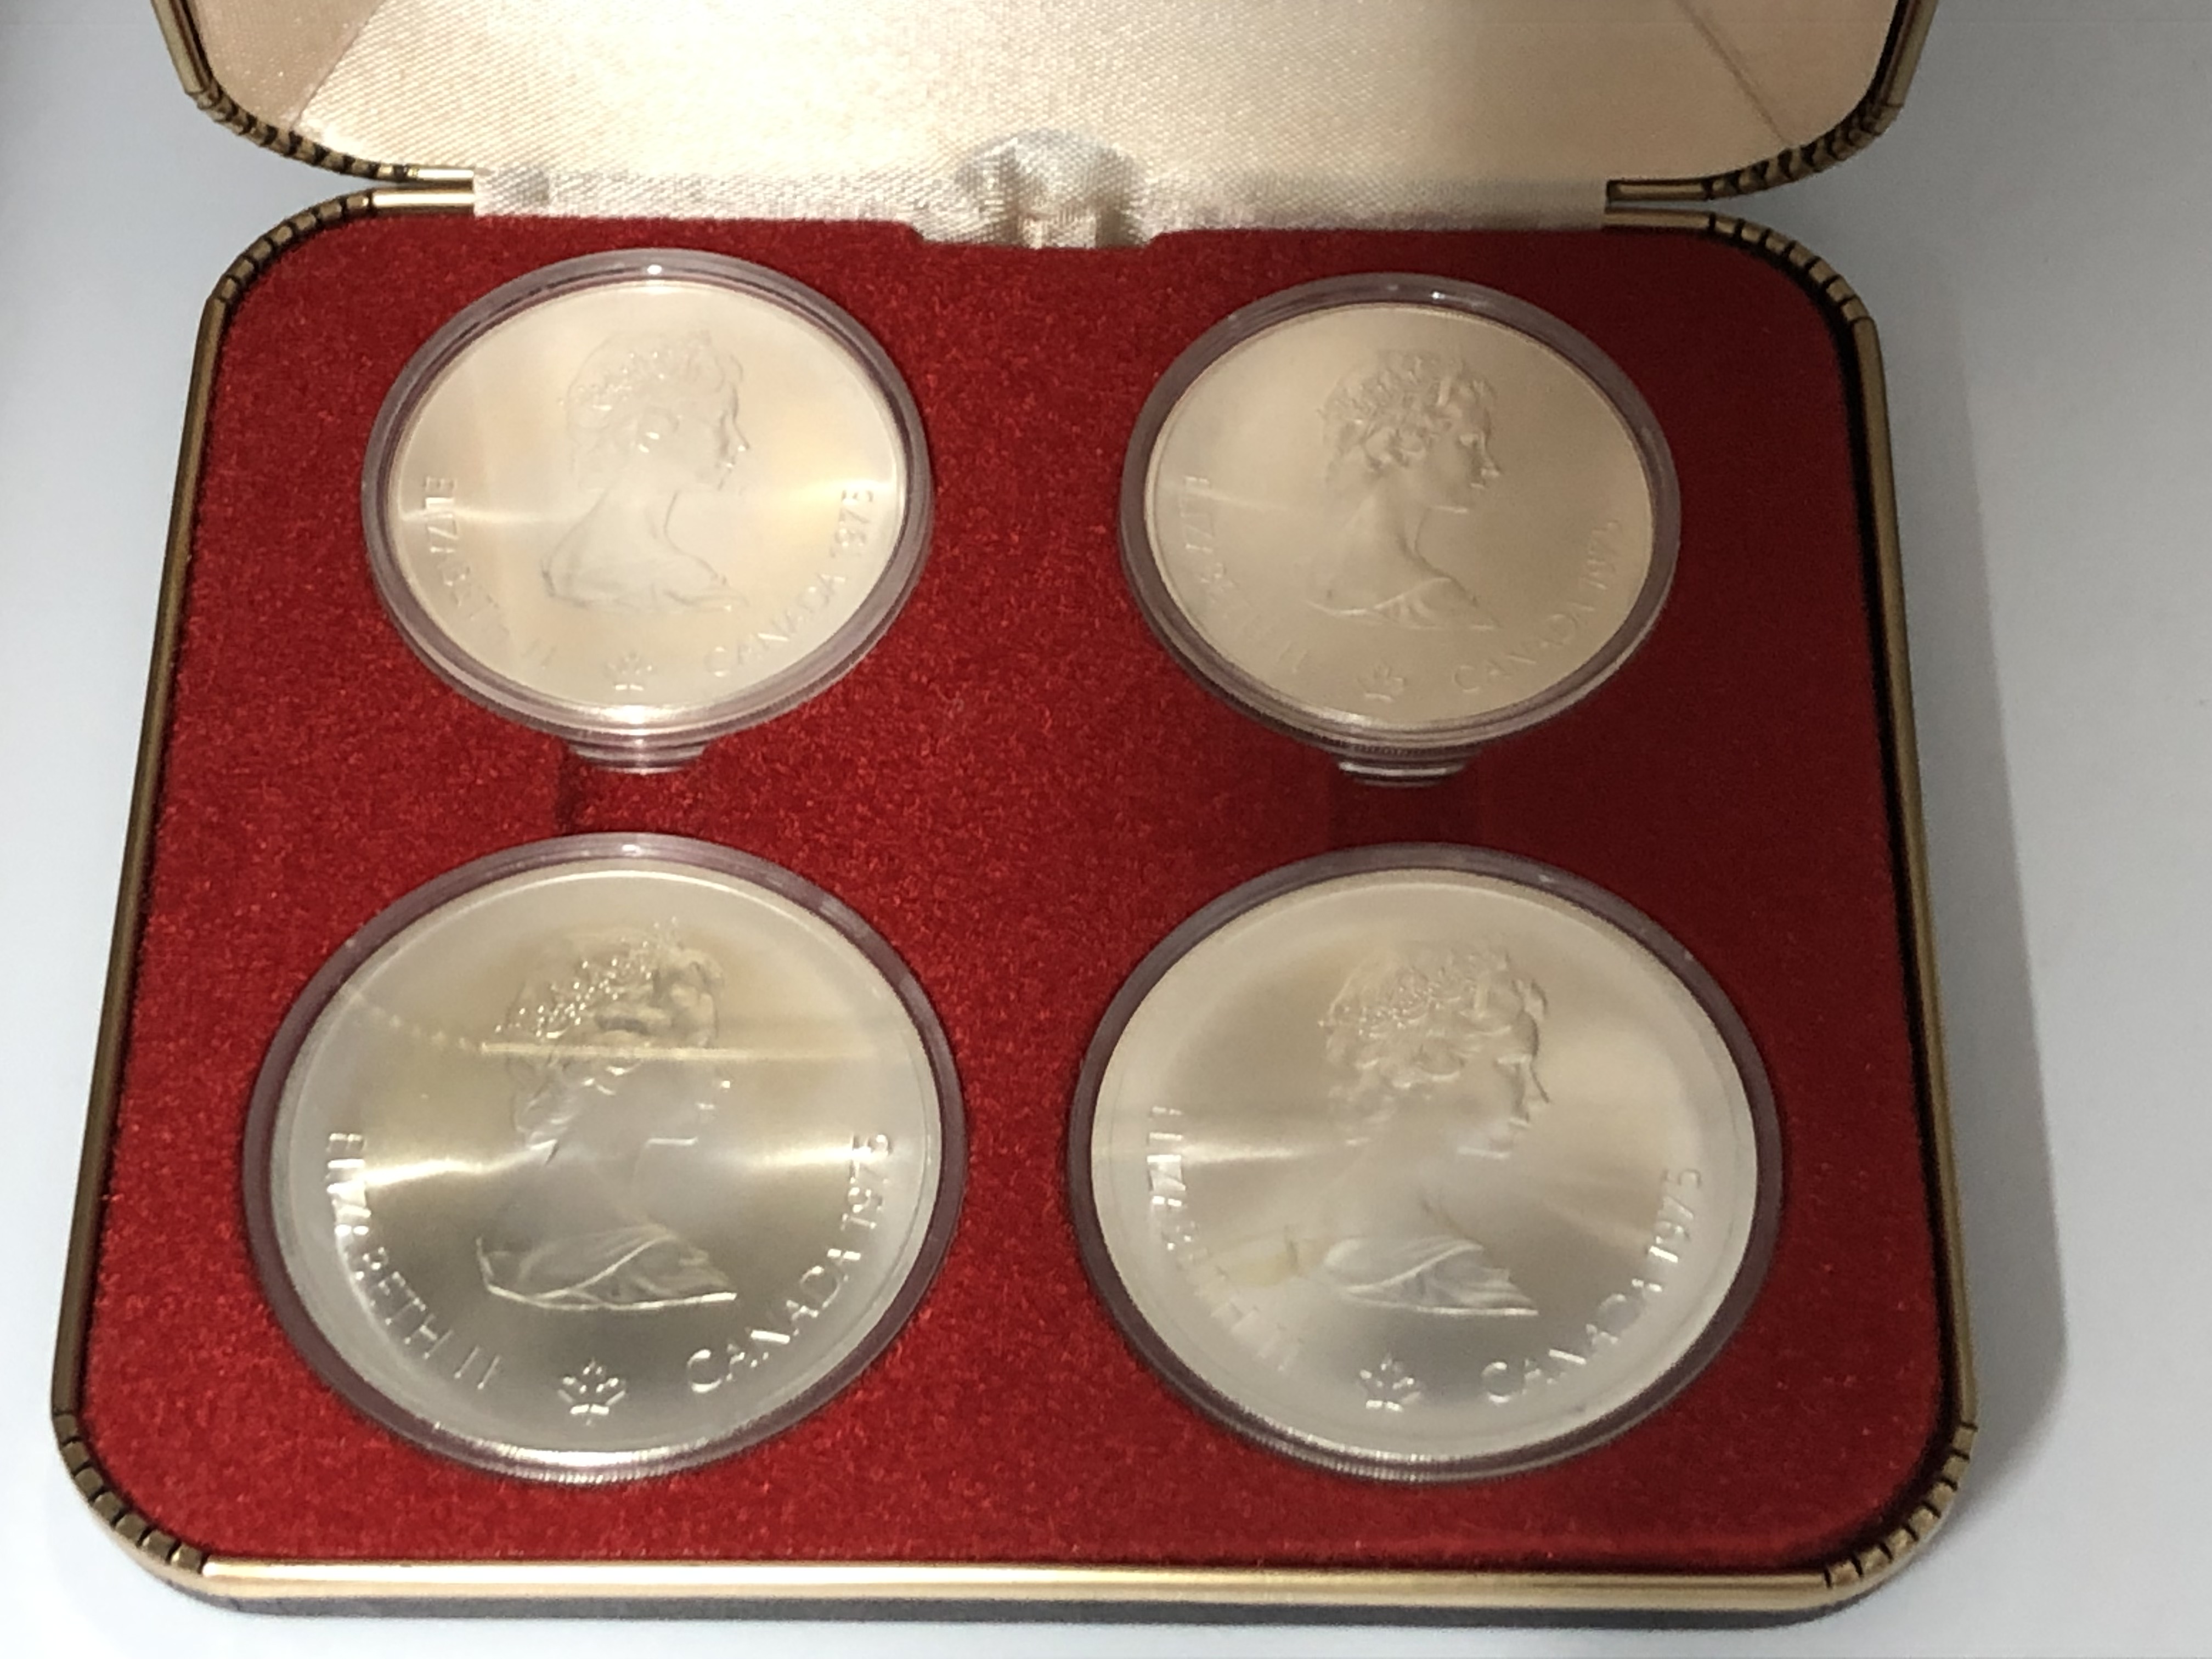 モントリオールオリンピック記念硬貨4枚セット